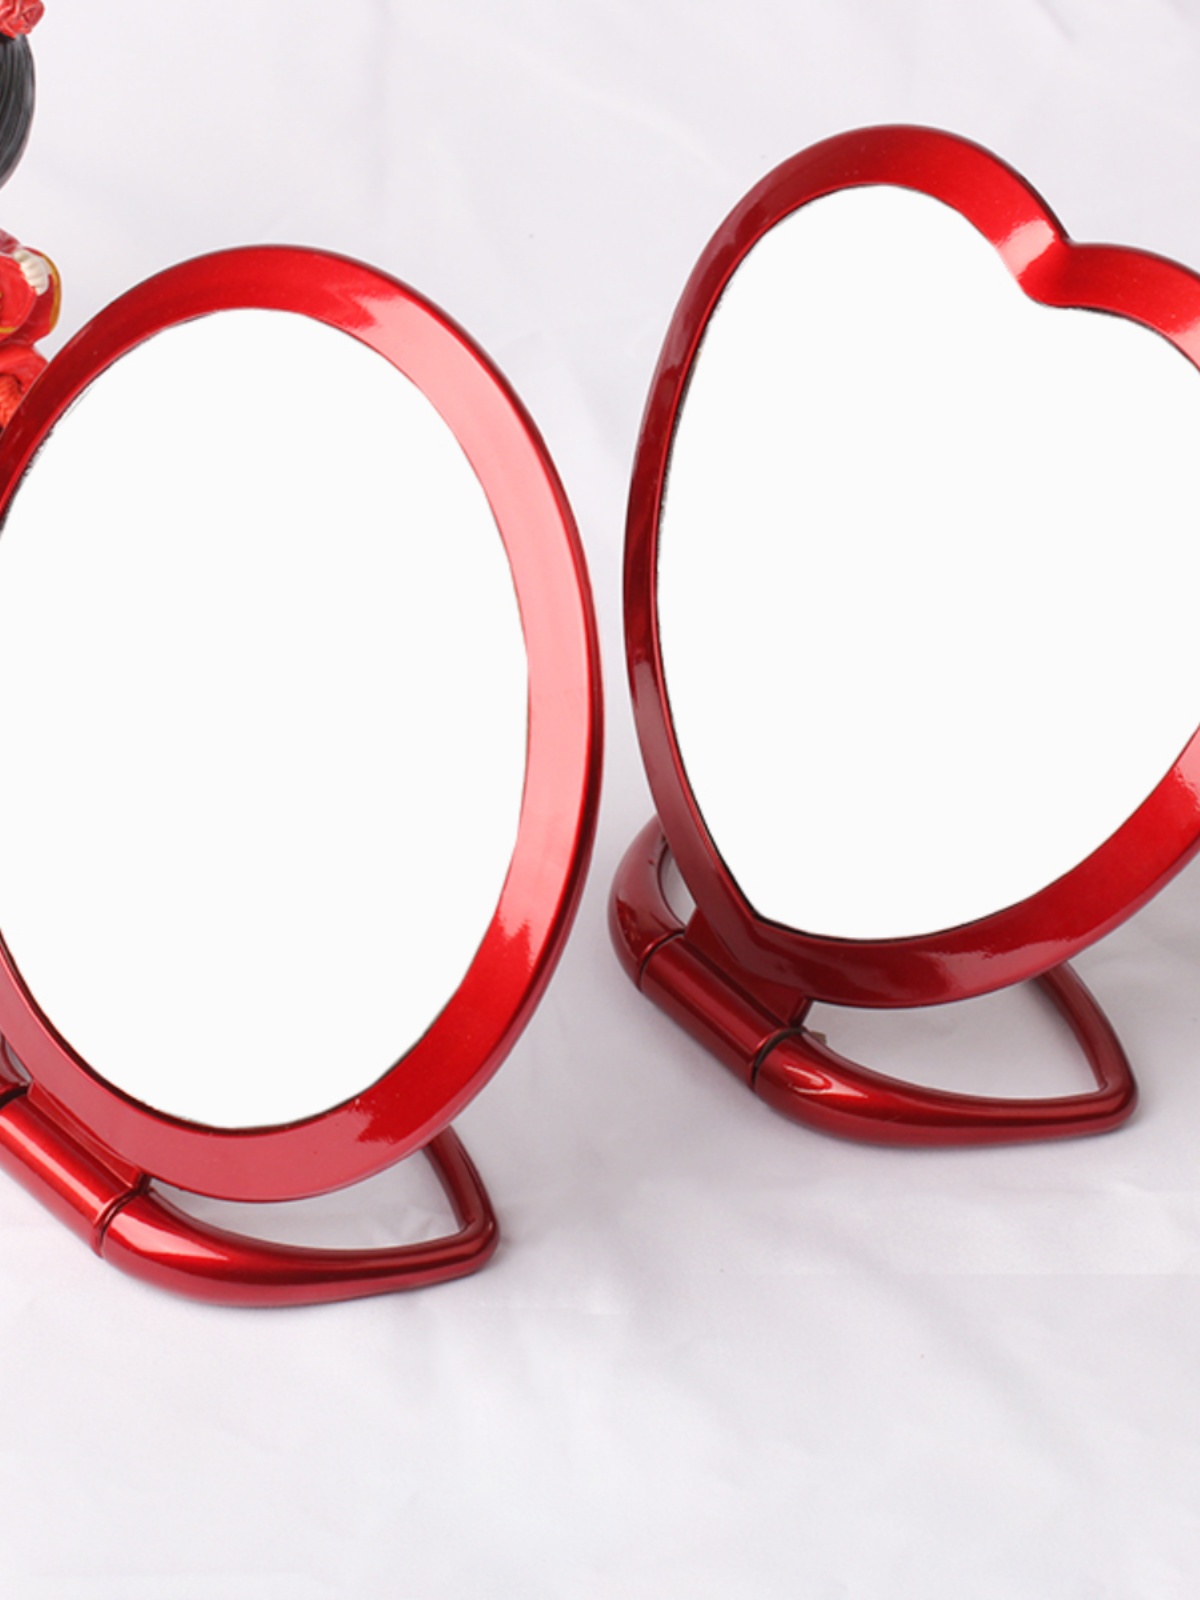 新娘红色结婚镜子婚庆用品嫁妆陪嫁欧式台式双面化妆镜结婚道具